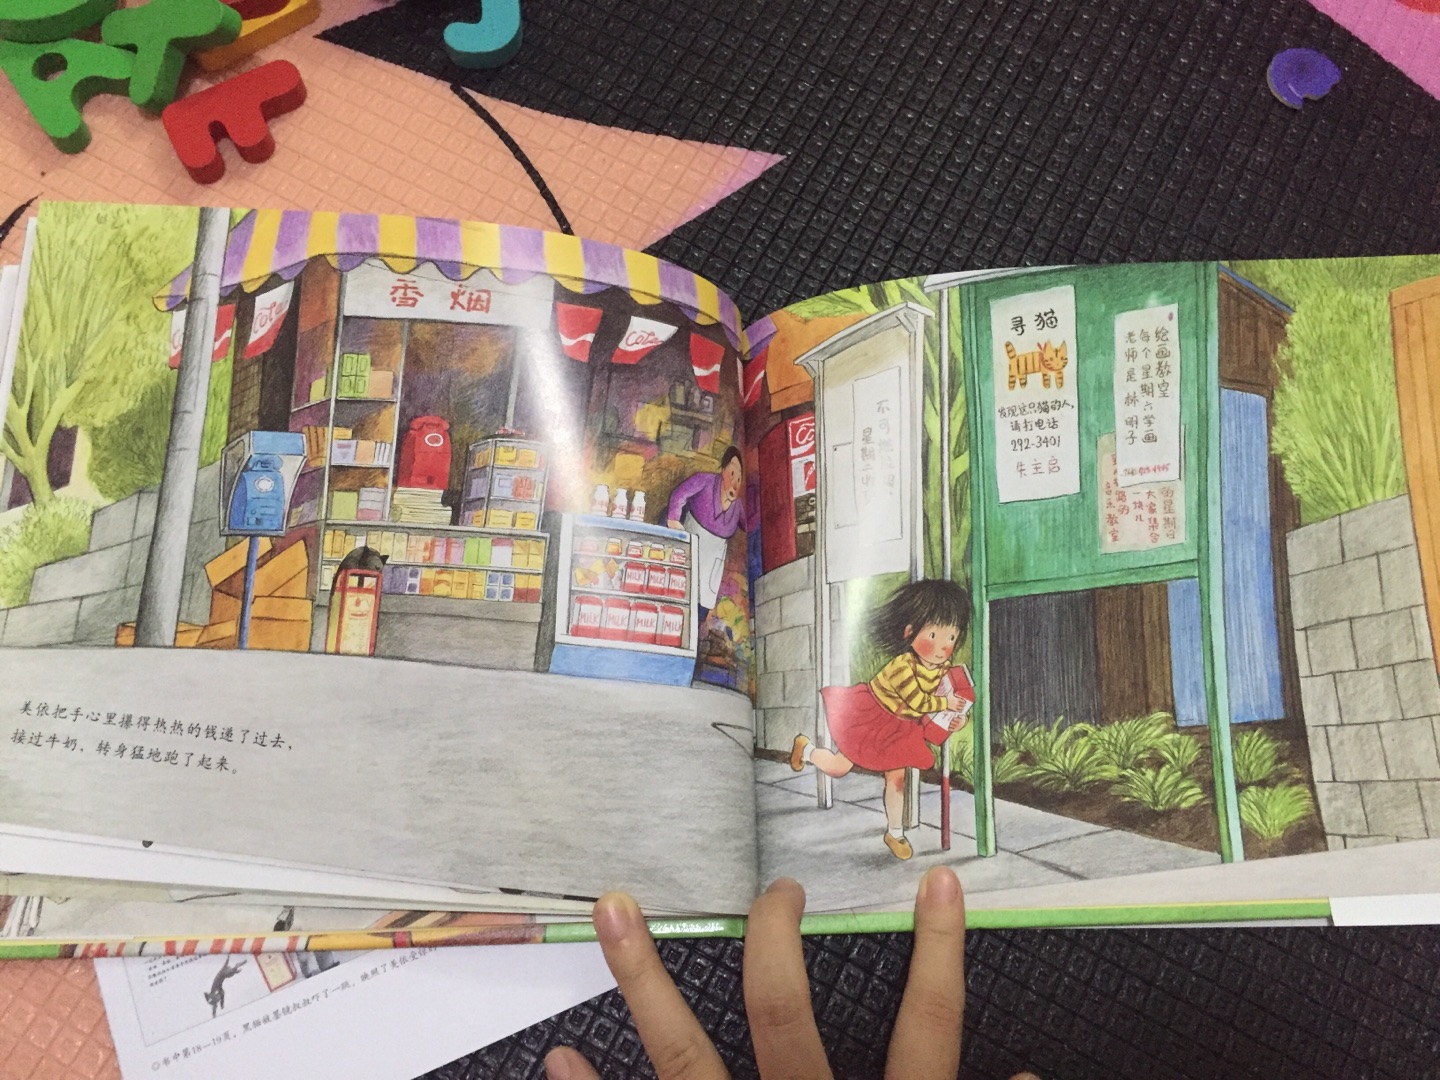 林明子的画都很喜欢细腻又温暖。筒井赖子的故事贴近生活，自然亲切。看完感同身受，小时候的我也是一样害羞，内向。很好的一本书值得反复阅读